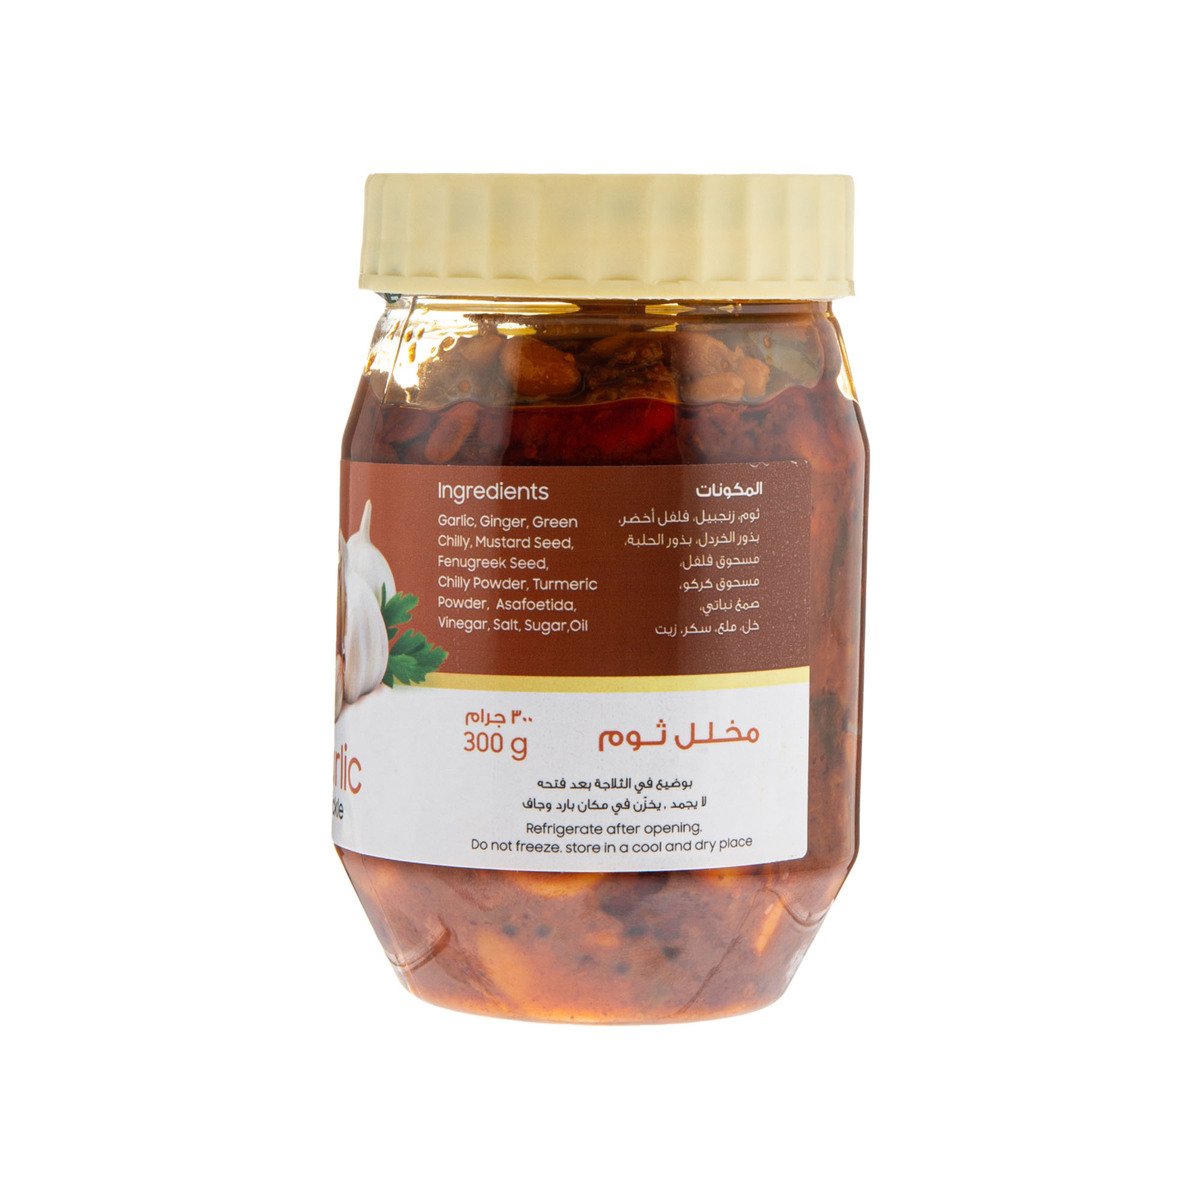 Lulu Fresh Garlic Pickle 300g Online At Best Price Pickles And Jams Lulu Uae 